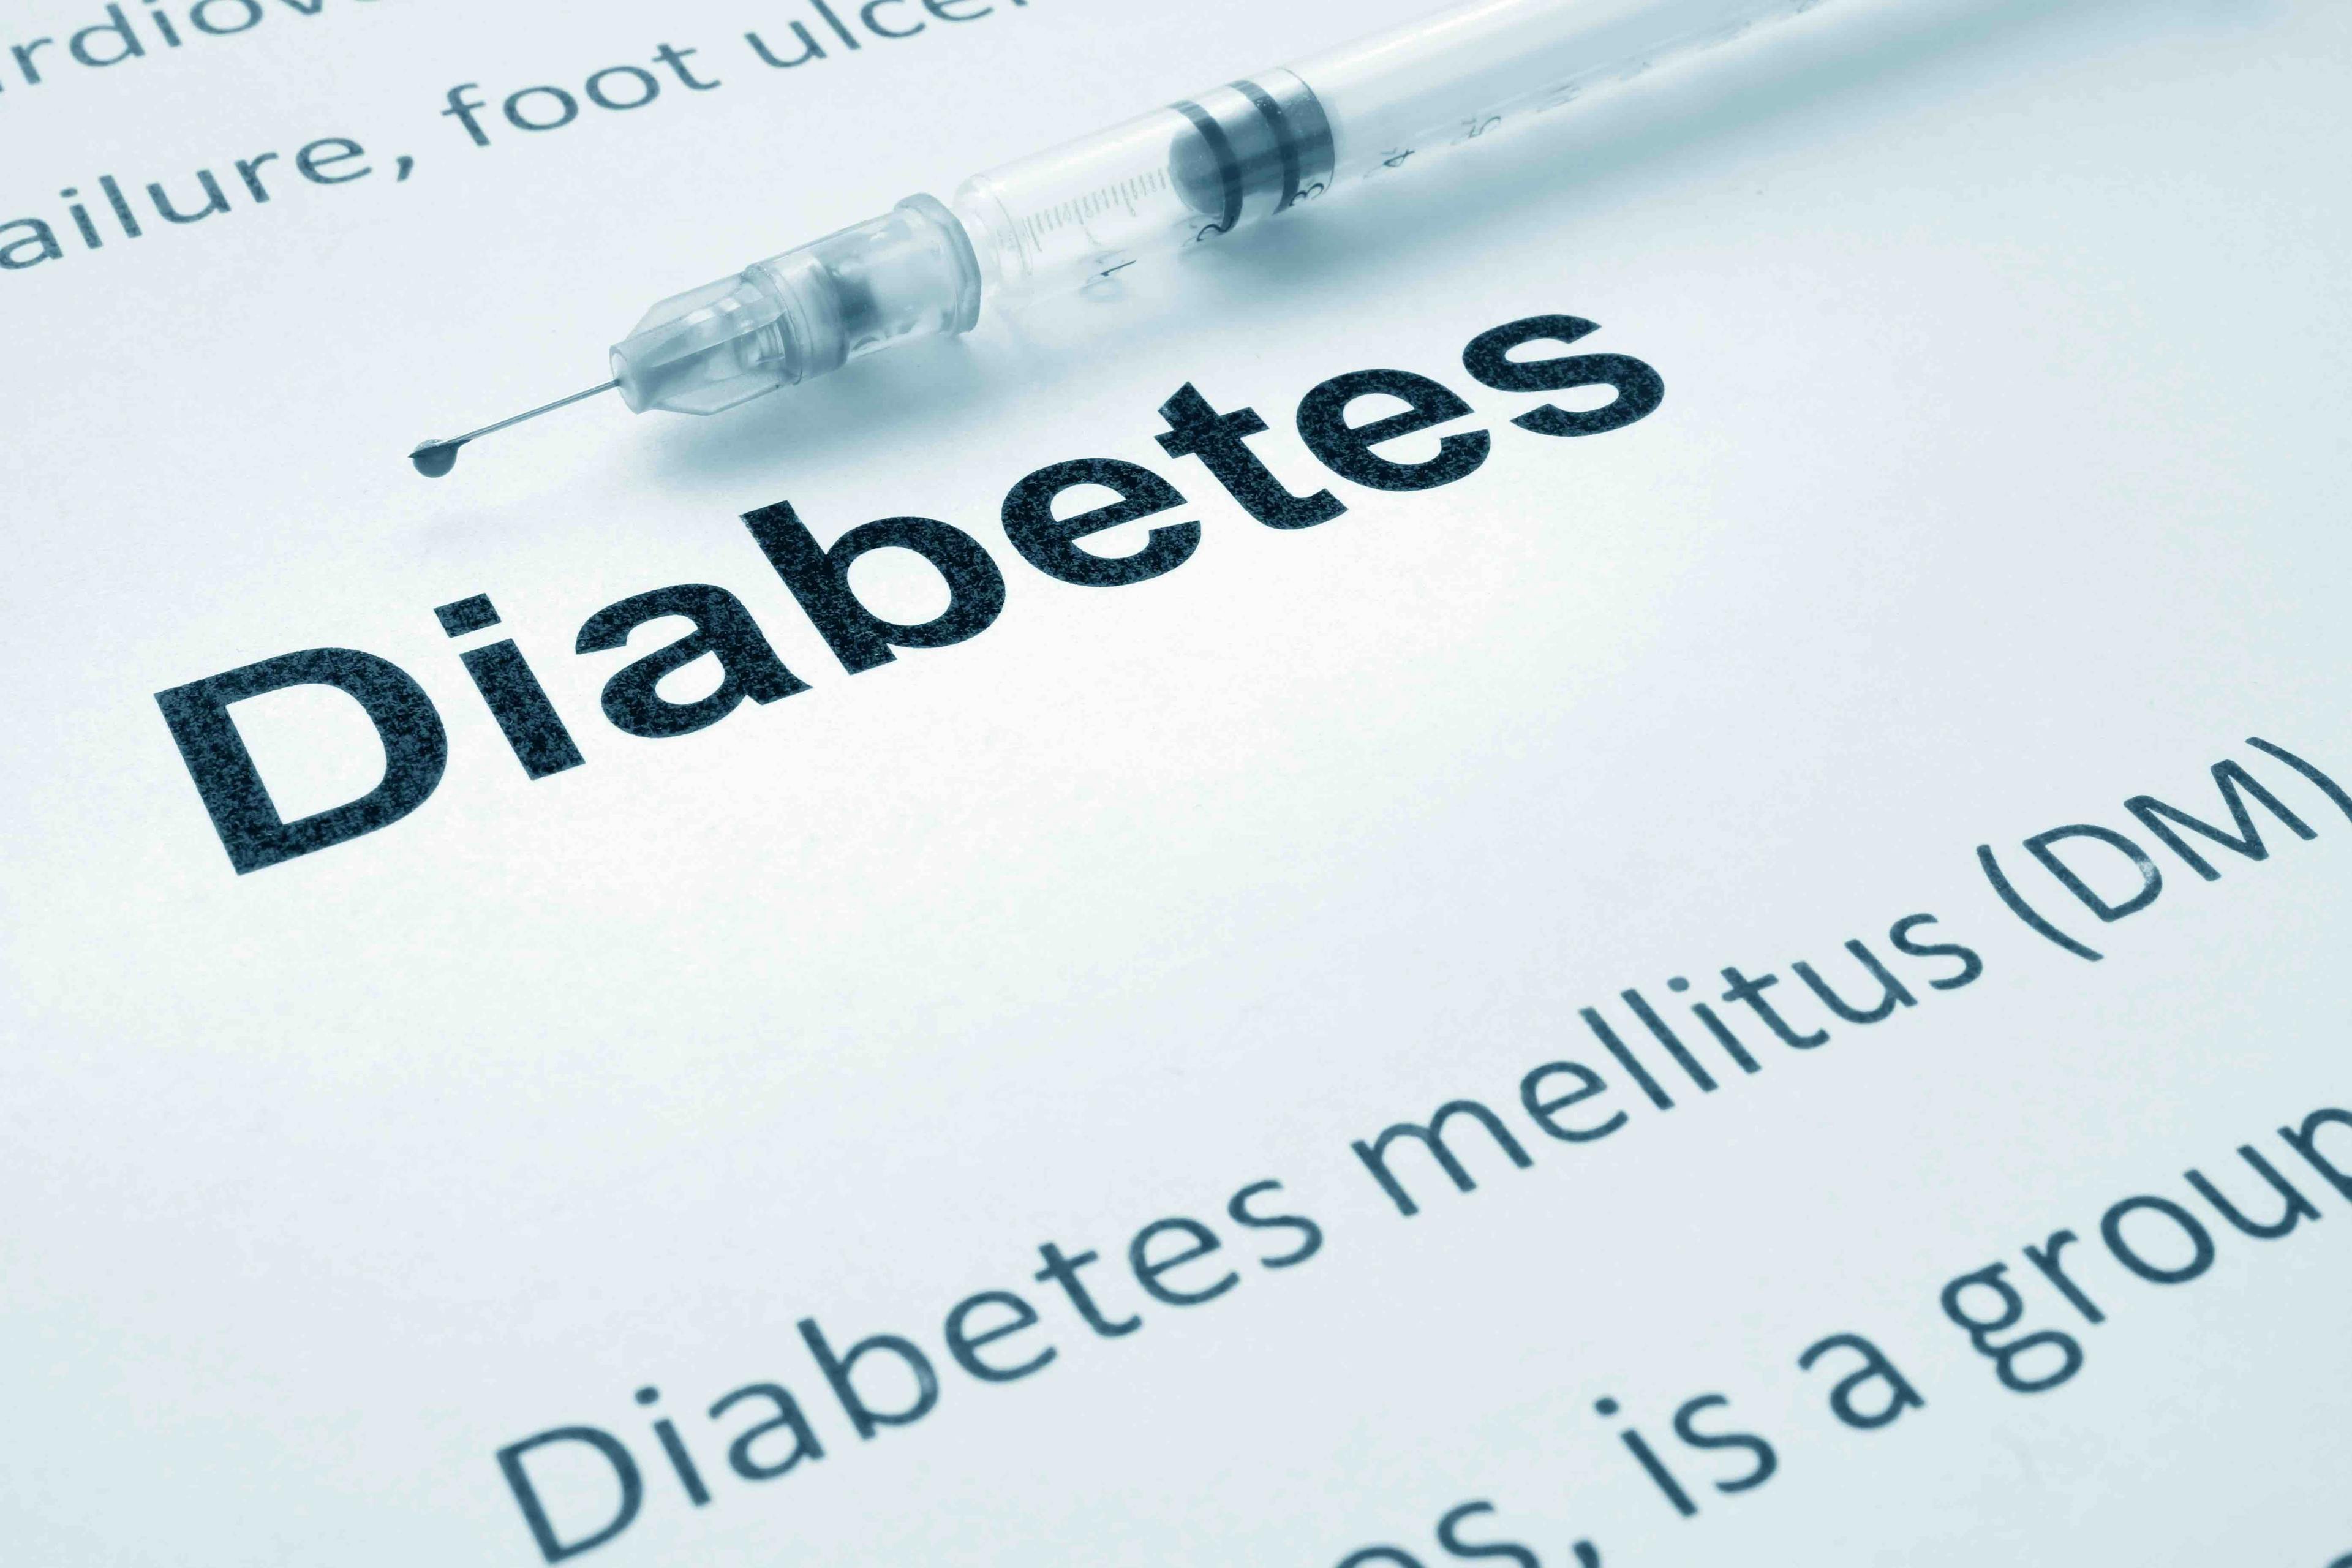 Diabetes | Image credit: Vitalii Vodolazskyi - stock.adobe.com